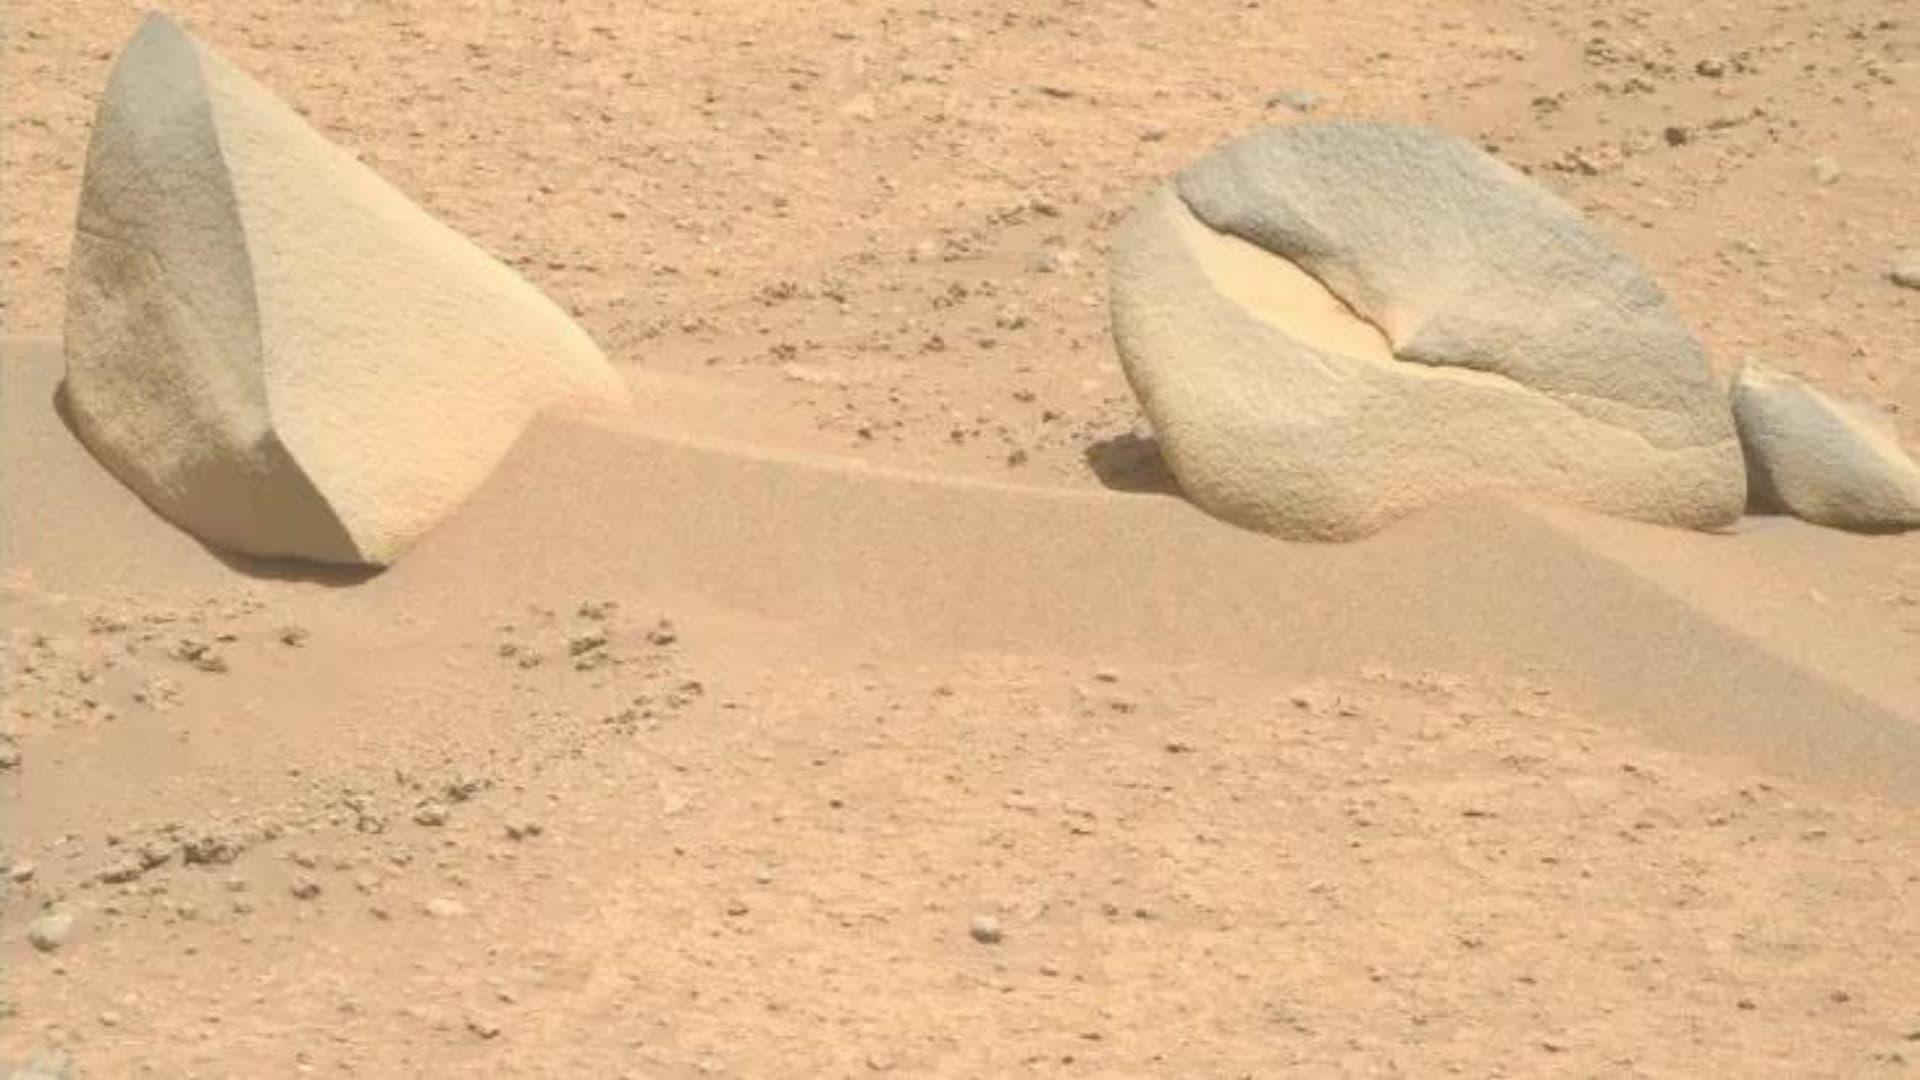 Rocha em forma de garra em Marte (NASA)